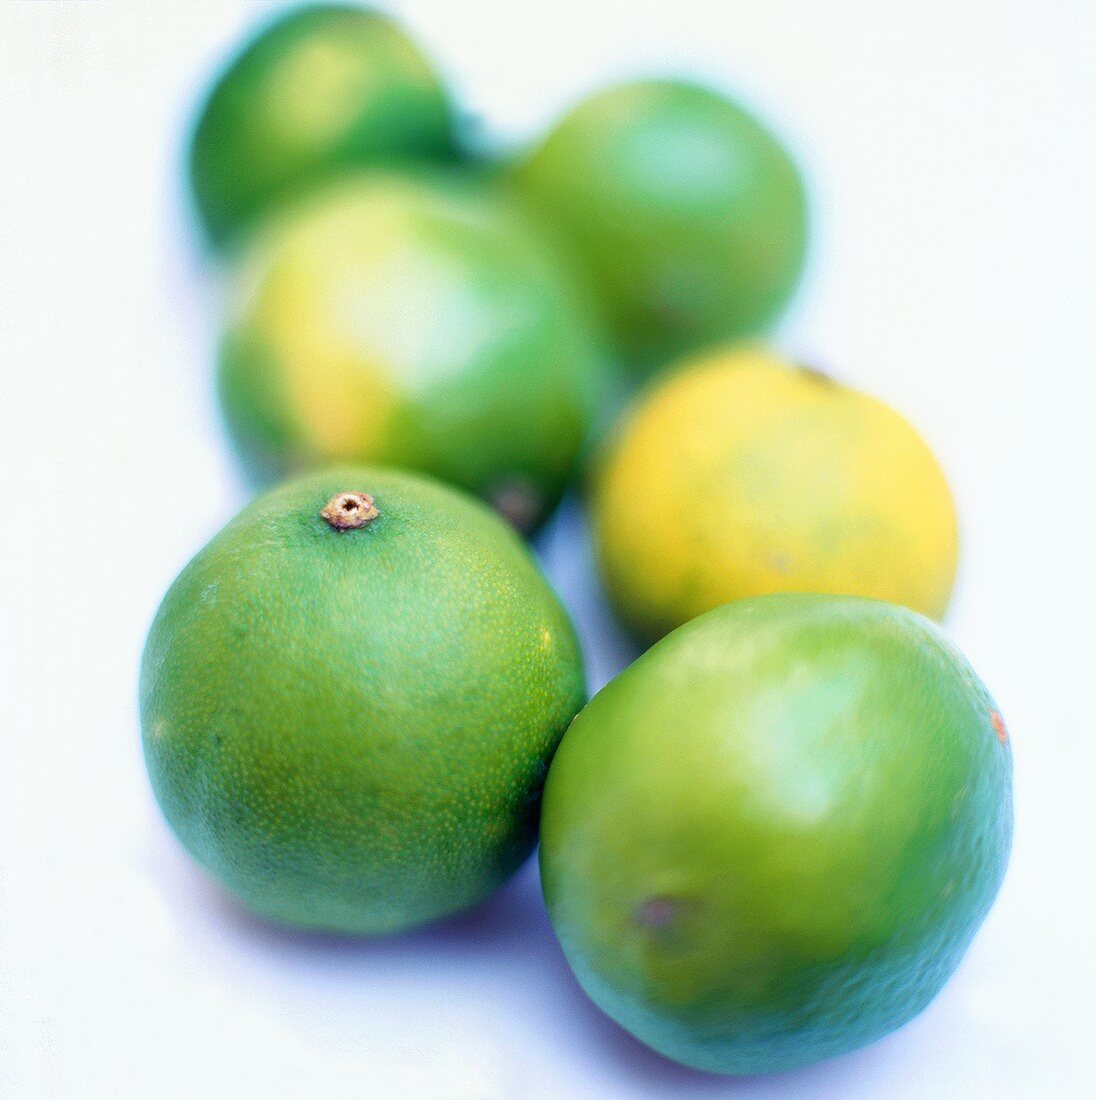 Six limes